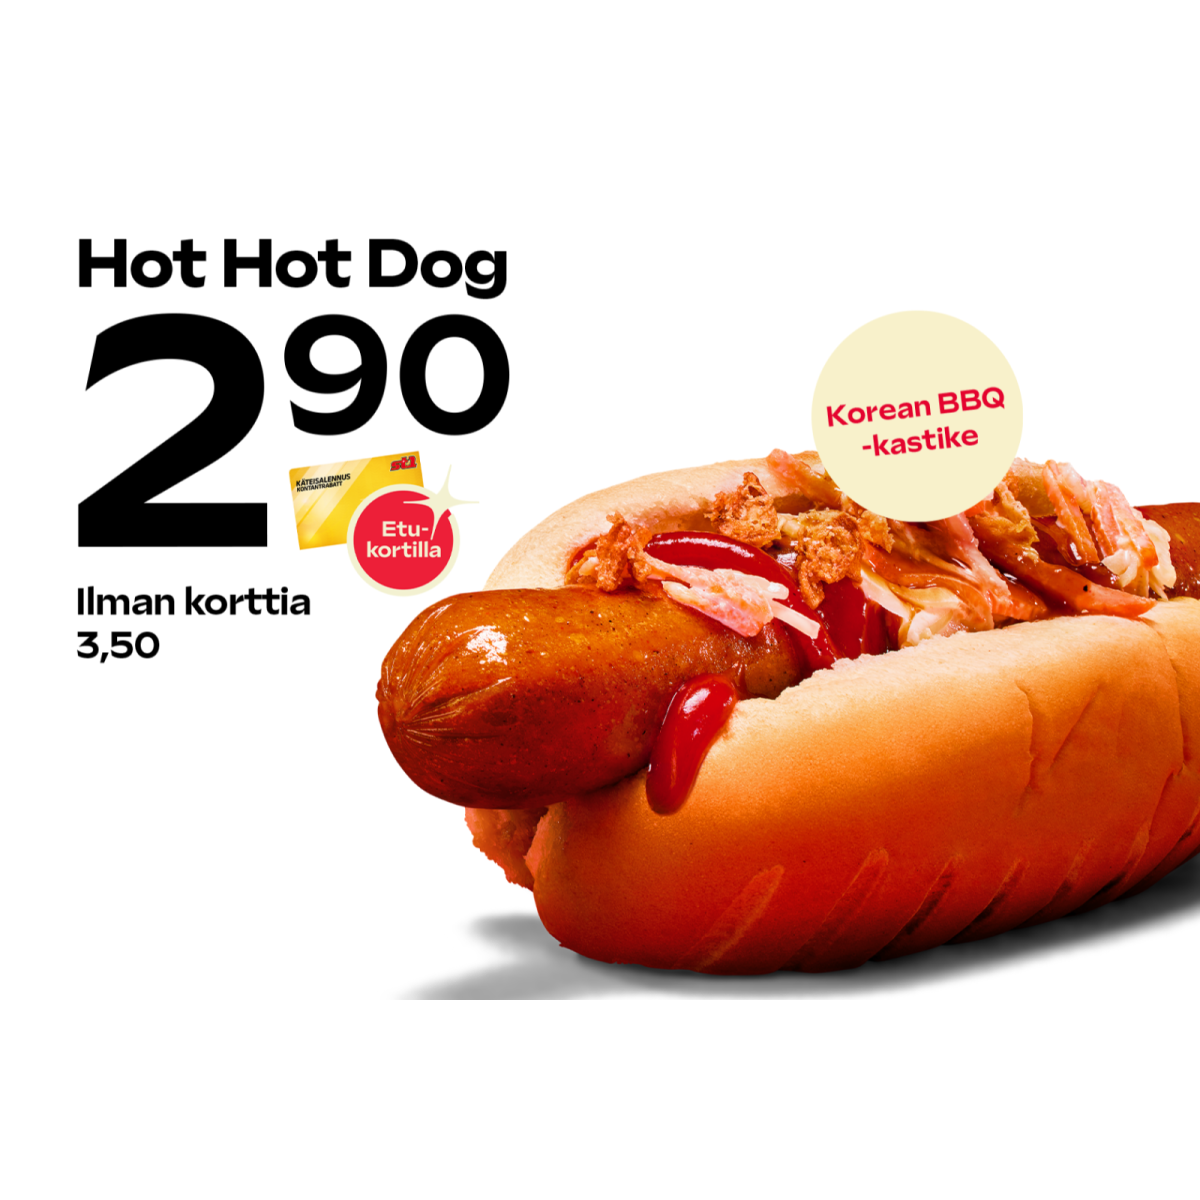 Hot Hot Dog